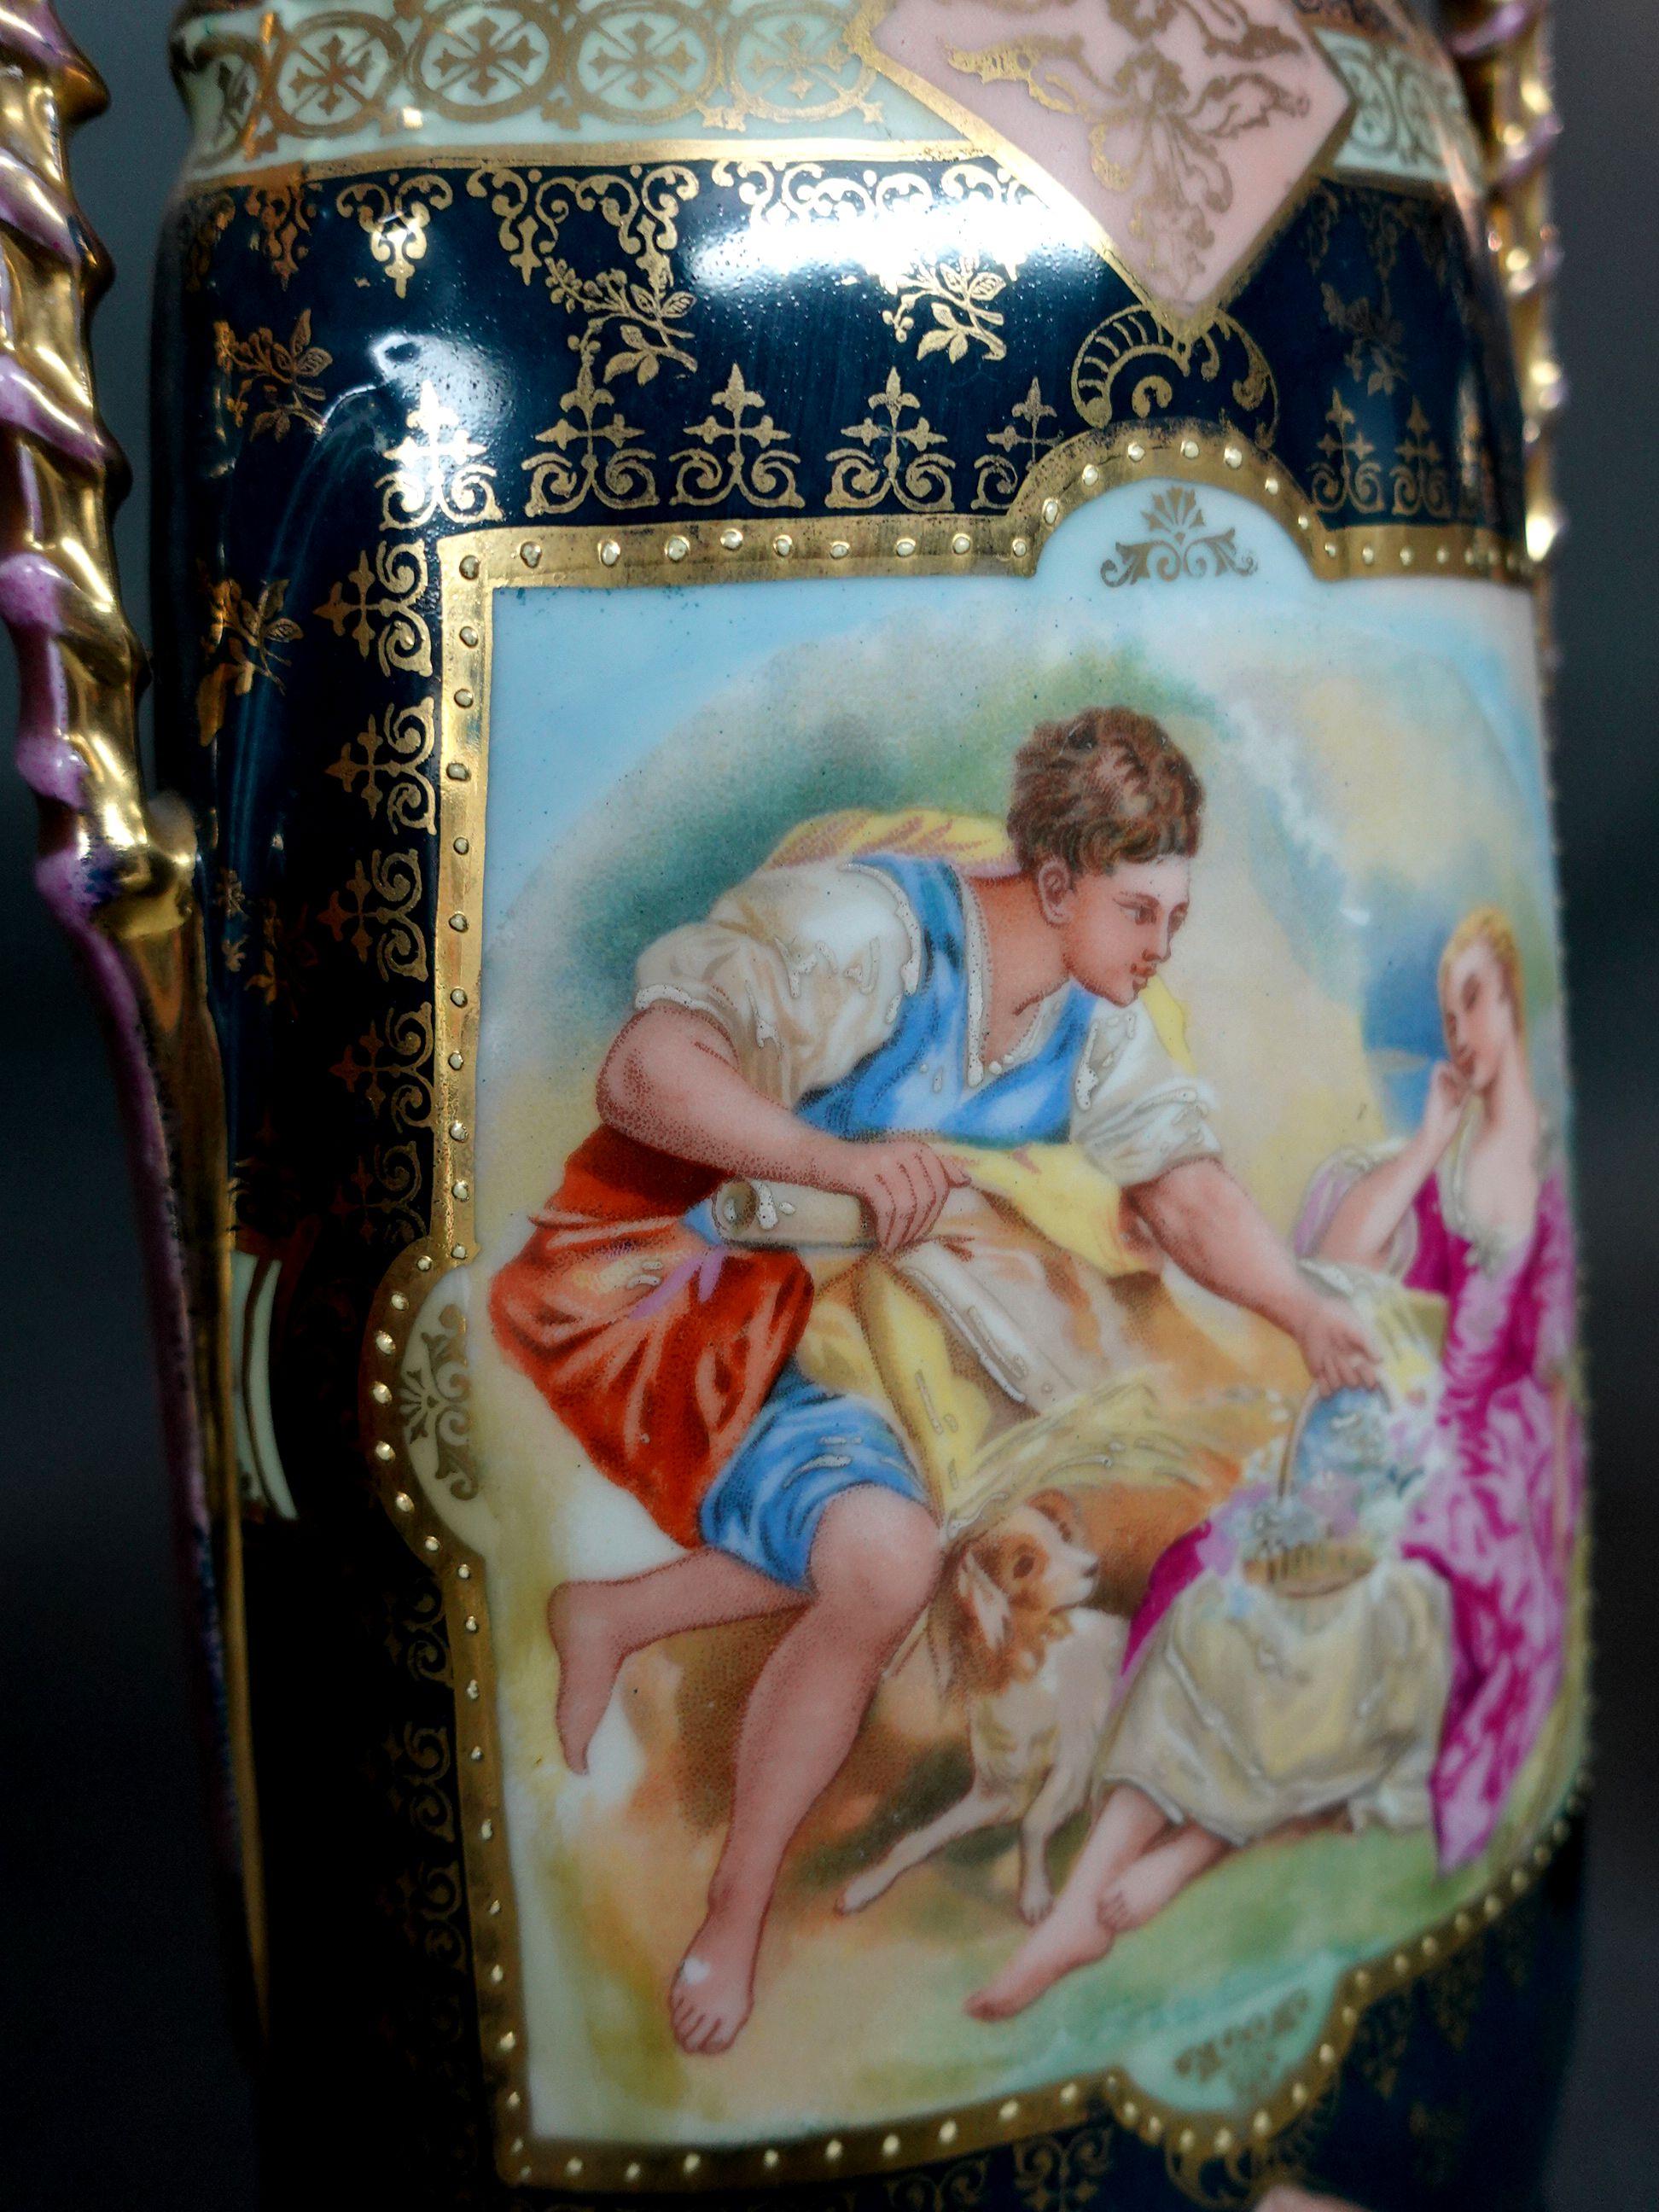 Antique 19th Century Pair of Victoria Carlsbad Austria Vases 